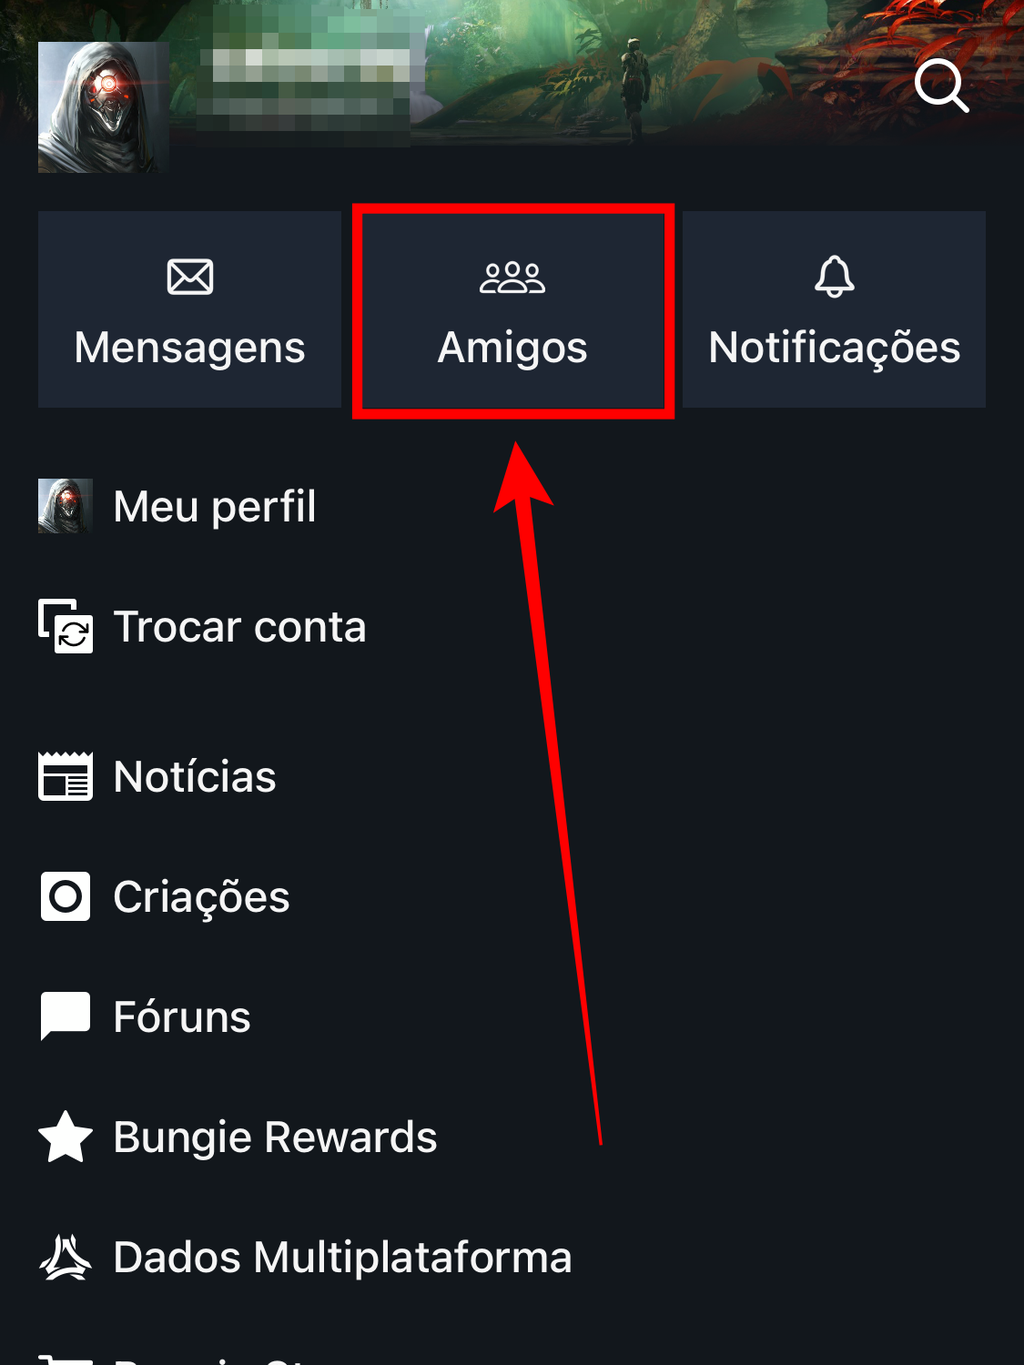 Selecione "Amigos" no app mobile para pesquisar por novos jogadores (Captura de tela: Caio Carvalho/Canaltech)